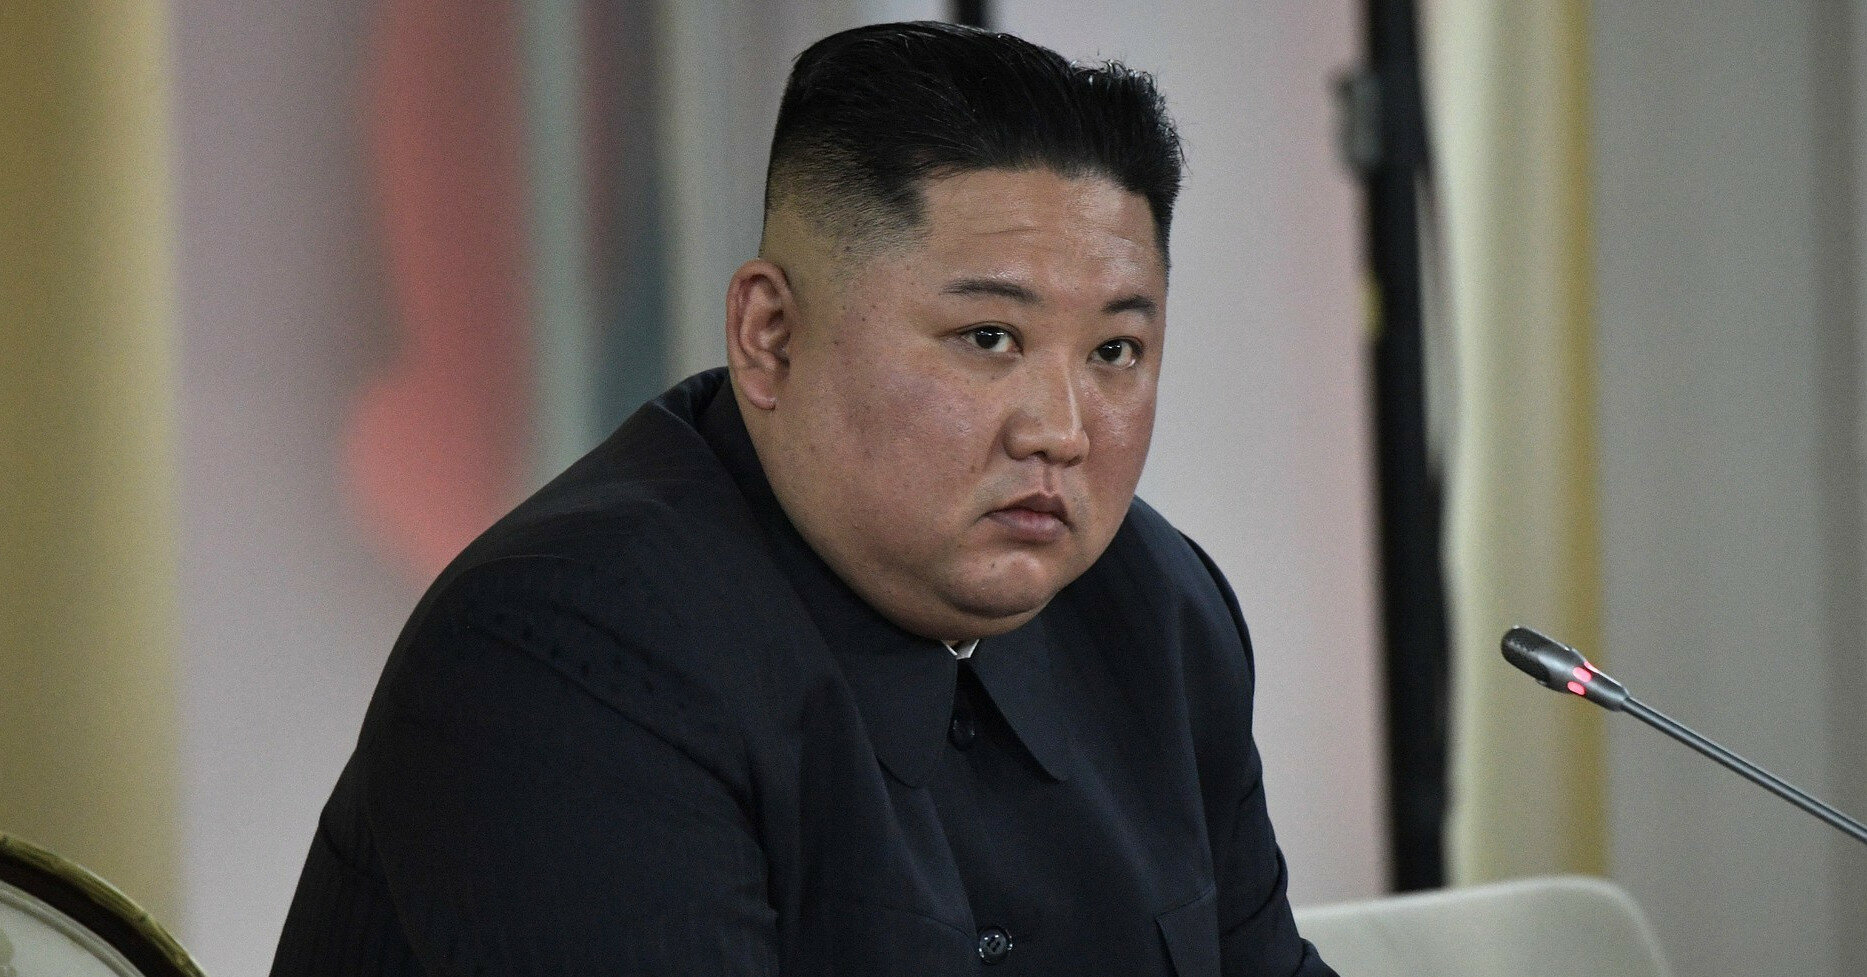 Ким Чен Ын похудел: мировое сообщество обеспокоено